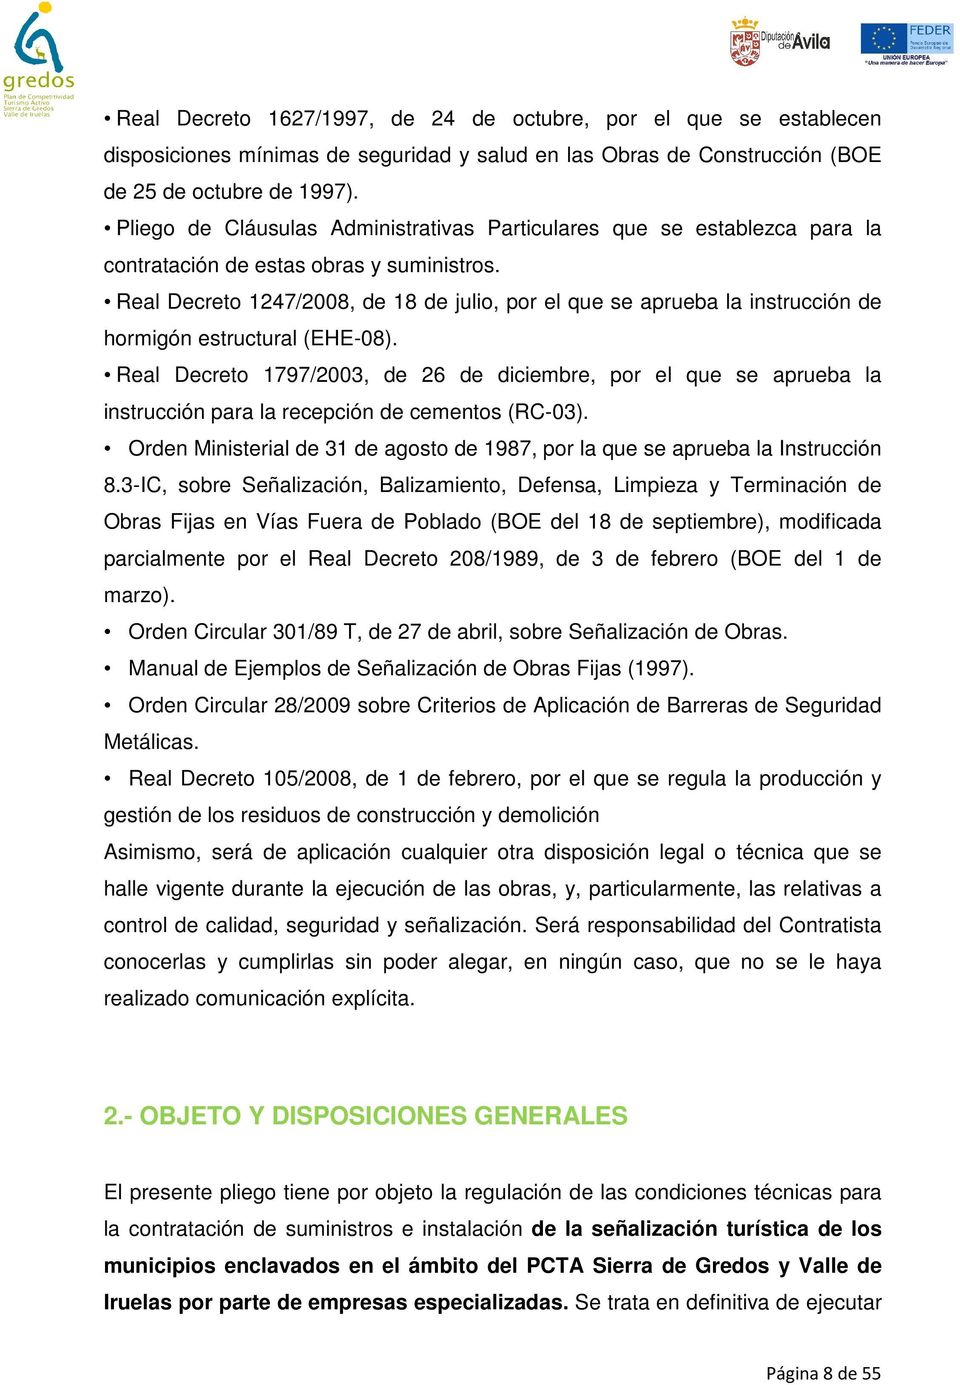 Real Decreto 1247/2008, de 18 de julio, por el que se aprueba la instrucción de hormigón estructural (EHE-08).